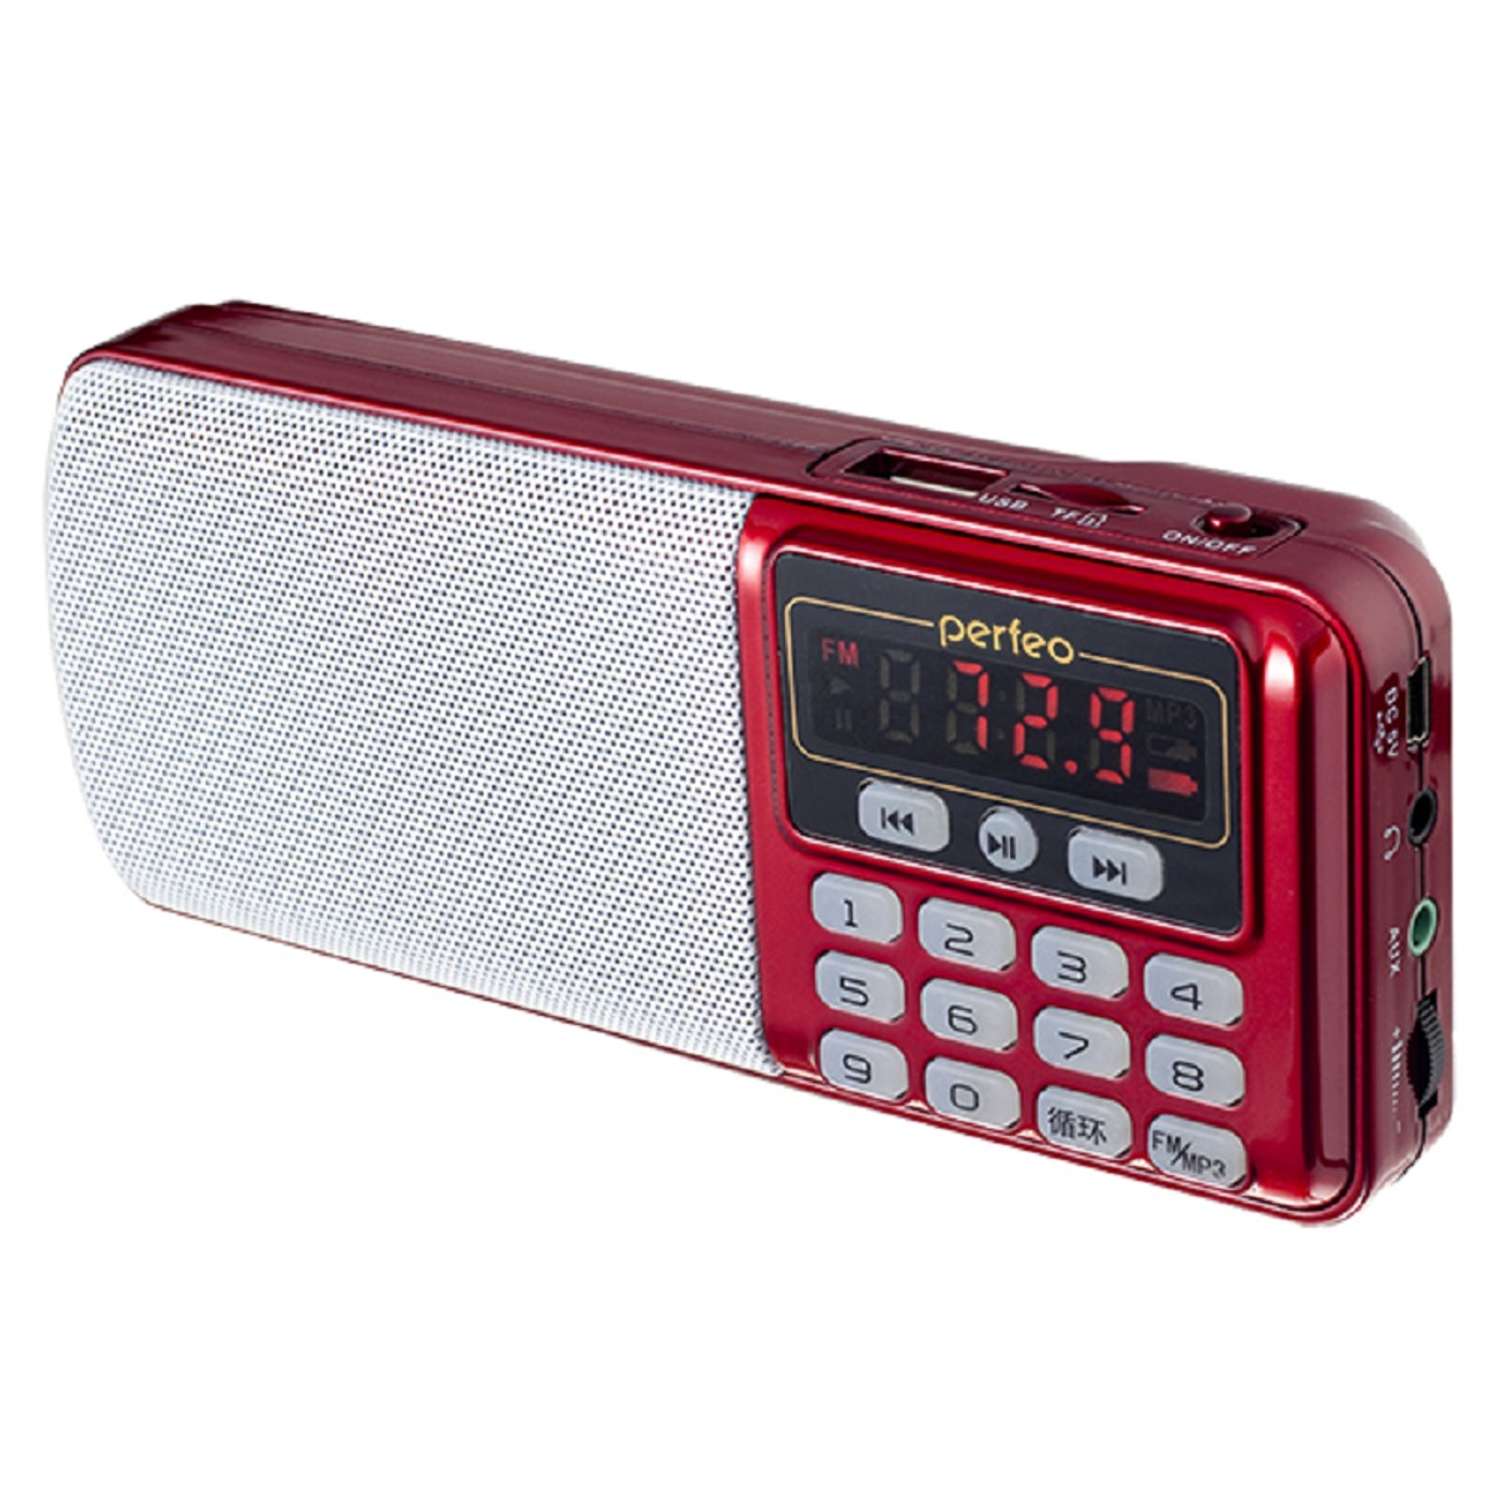 Радиоприемник Perfeo цифровой ЕГЕРЬ FM+ 70-108МГц MP3 питание USB или BL5C красный i120-RED - фото 2